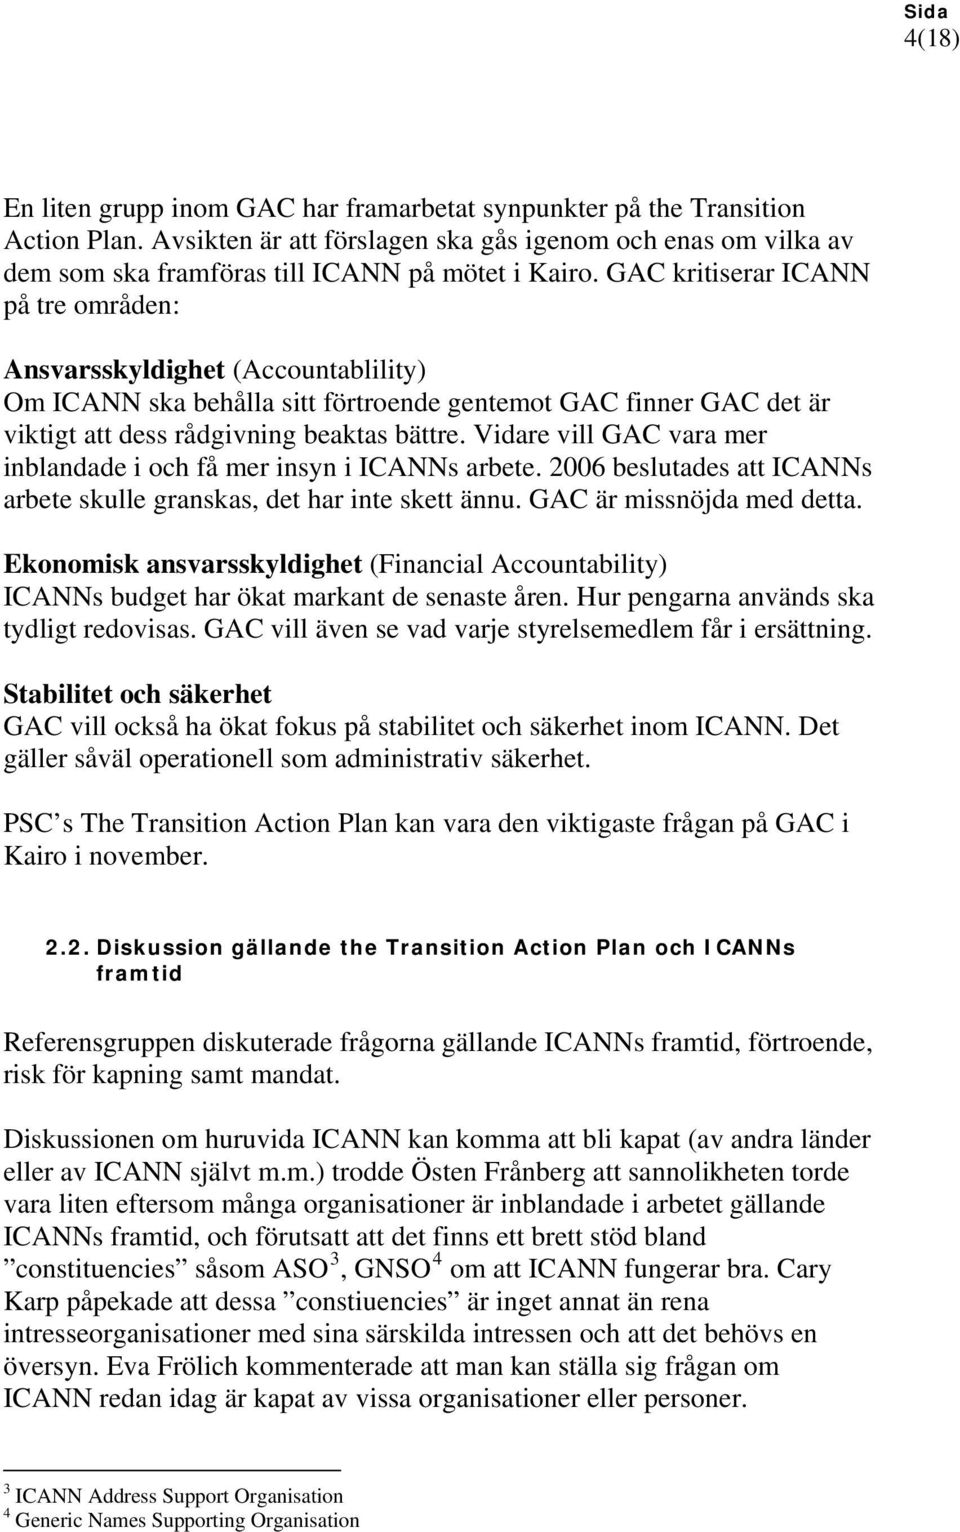 Vidare vill GAC vara mer inblandade i och få mer insyn i ICANNs arbete. 2006 beslutades att ICANNs arbete skulle granskas, det har inte skett ännu. GAC är missnöjda med detta.